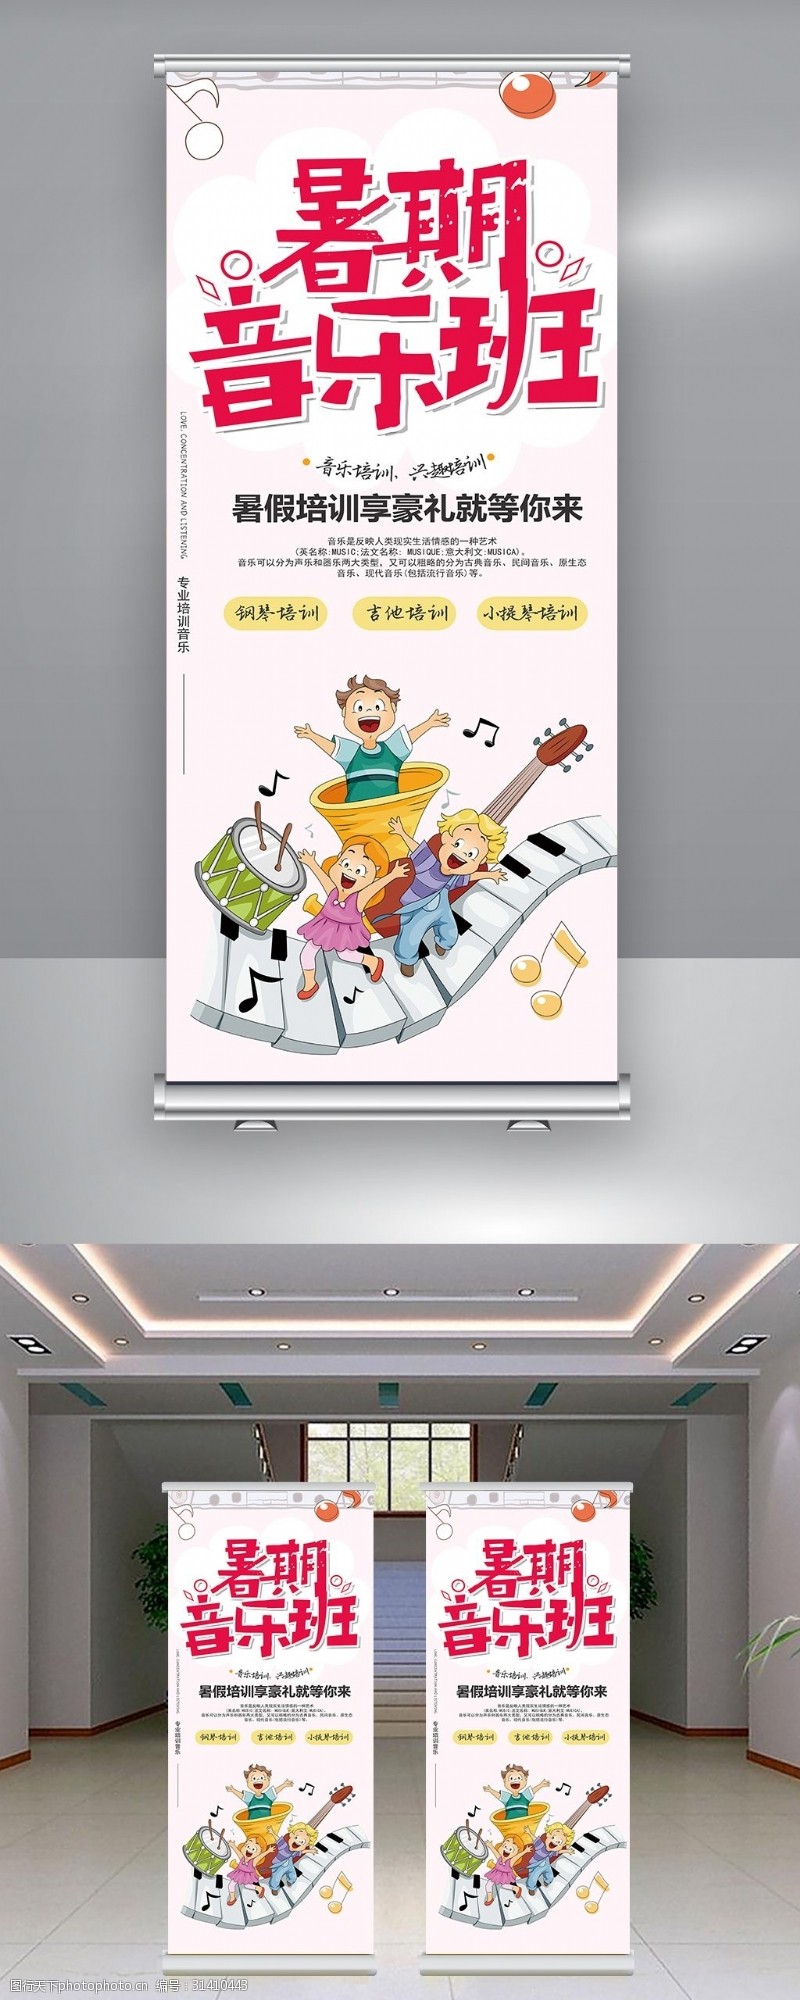 卡通音乐班招生易拉宝模板设计